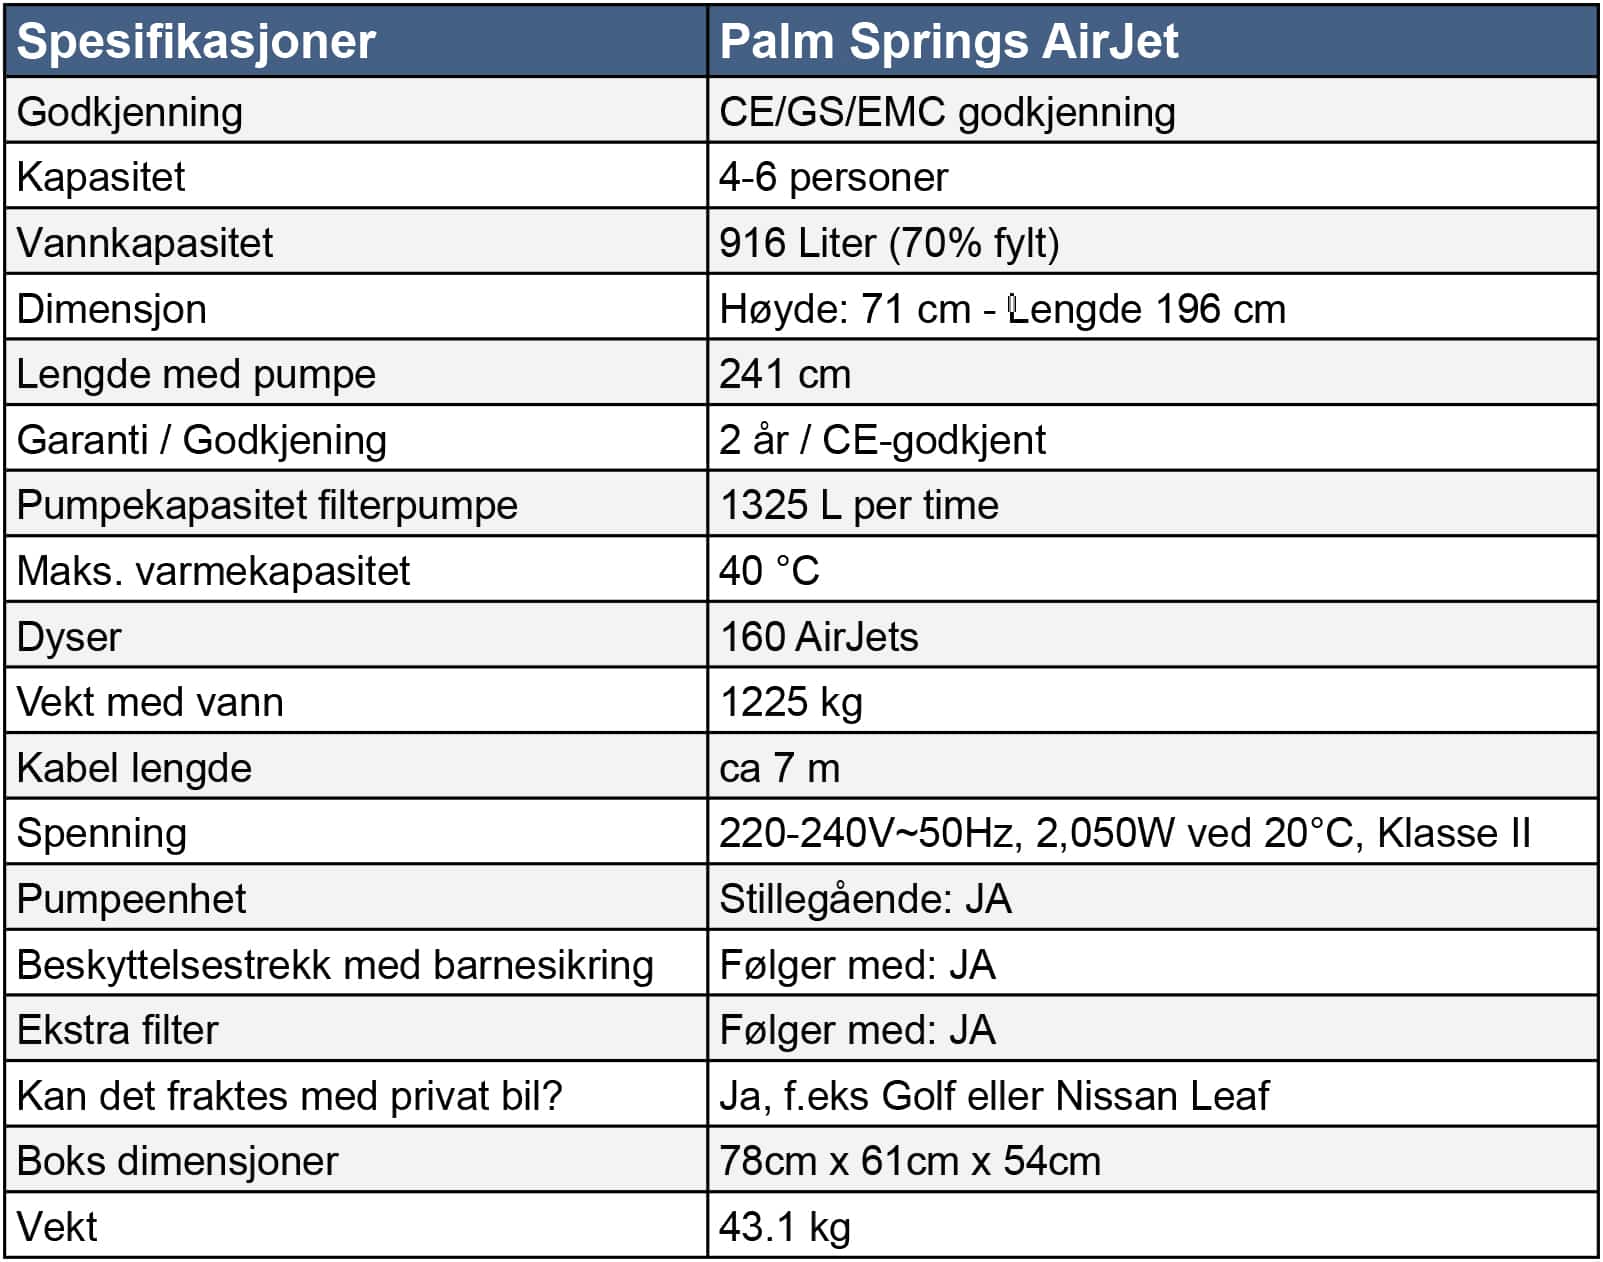 Spesifikasjoner Lay-Z-Spa Palm Springs AirJet